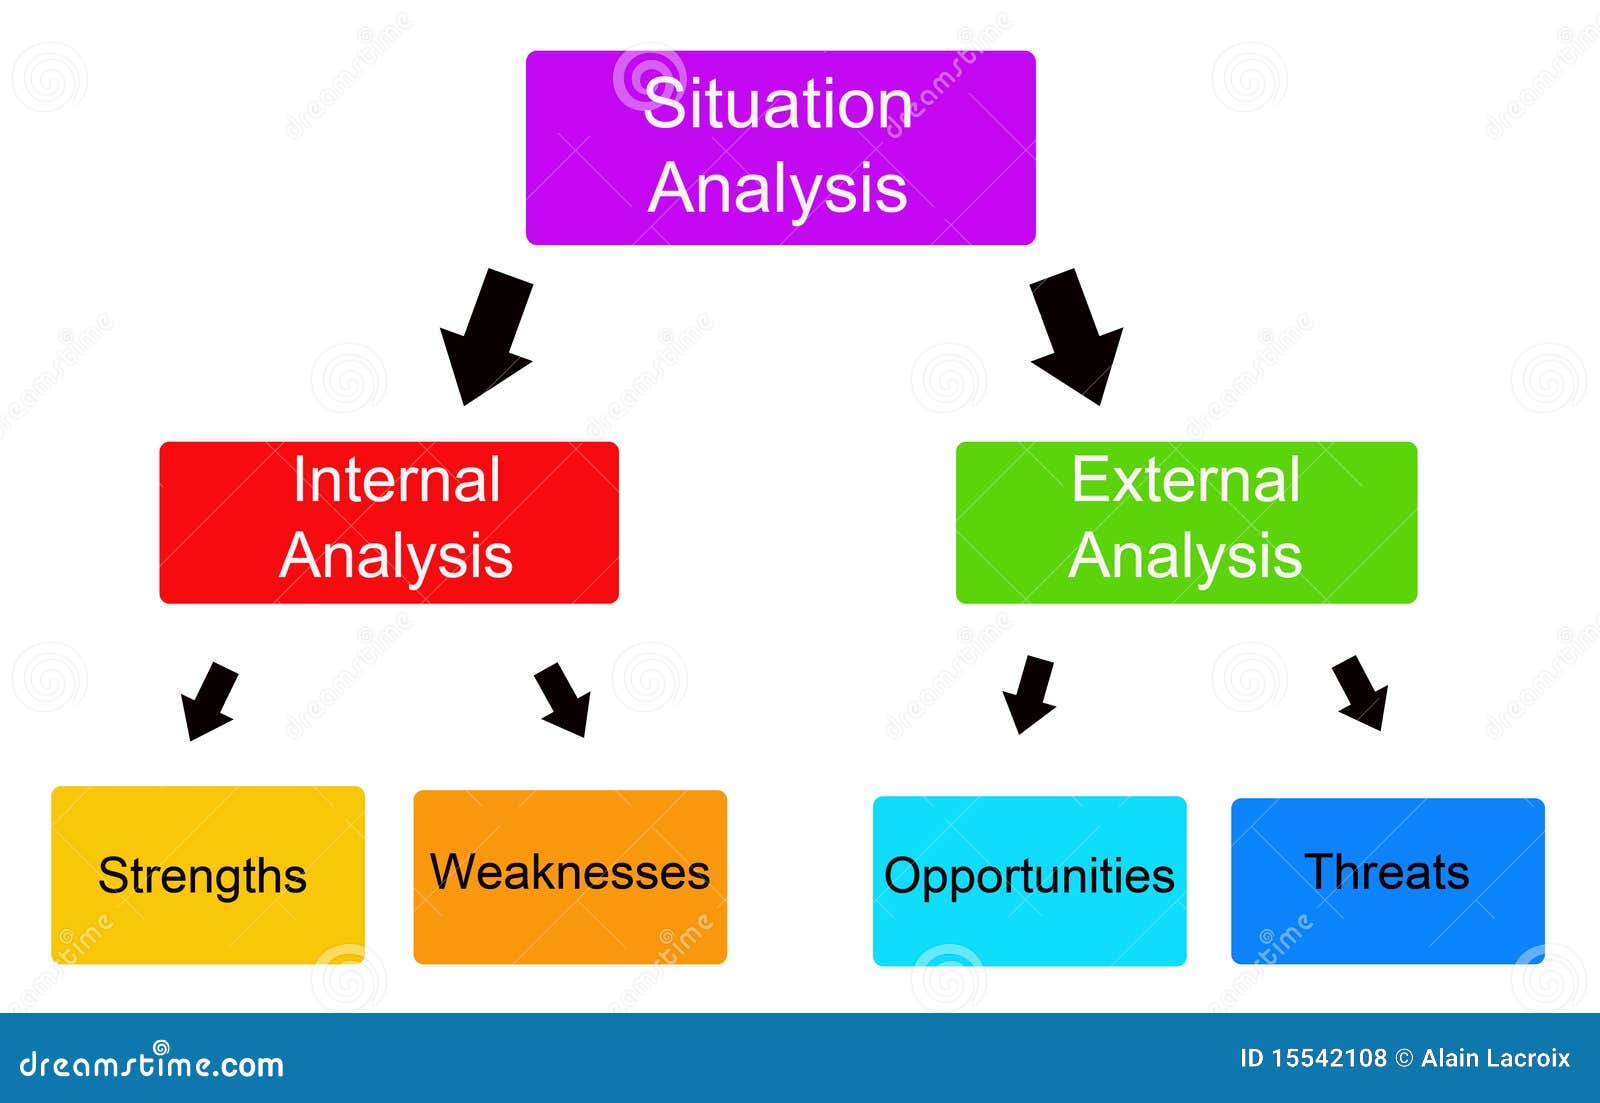 situation-analysis-15542108.jpg